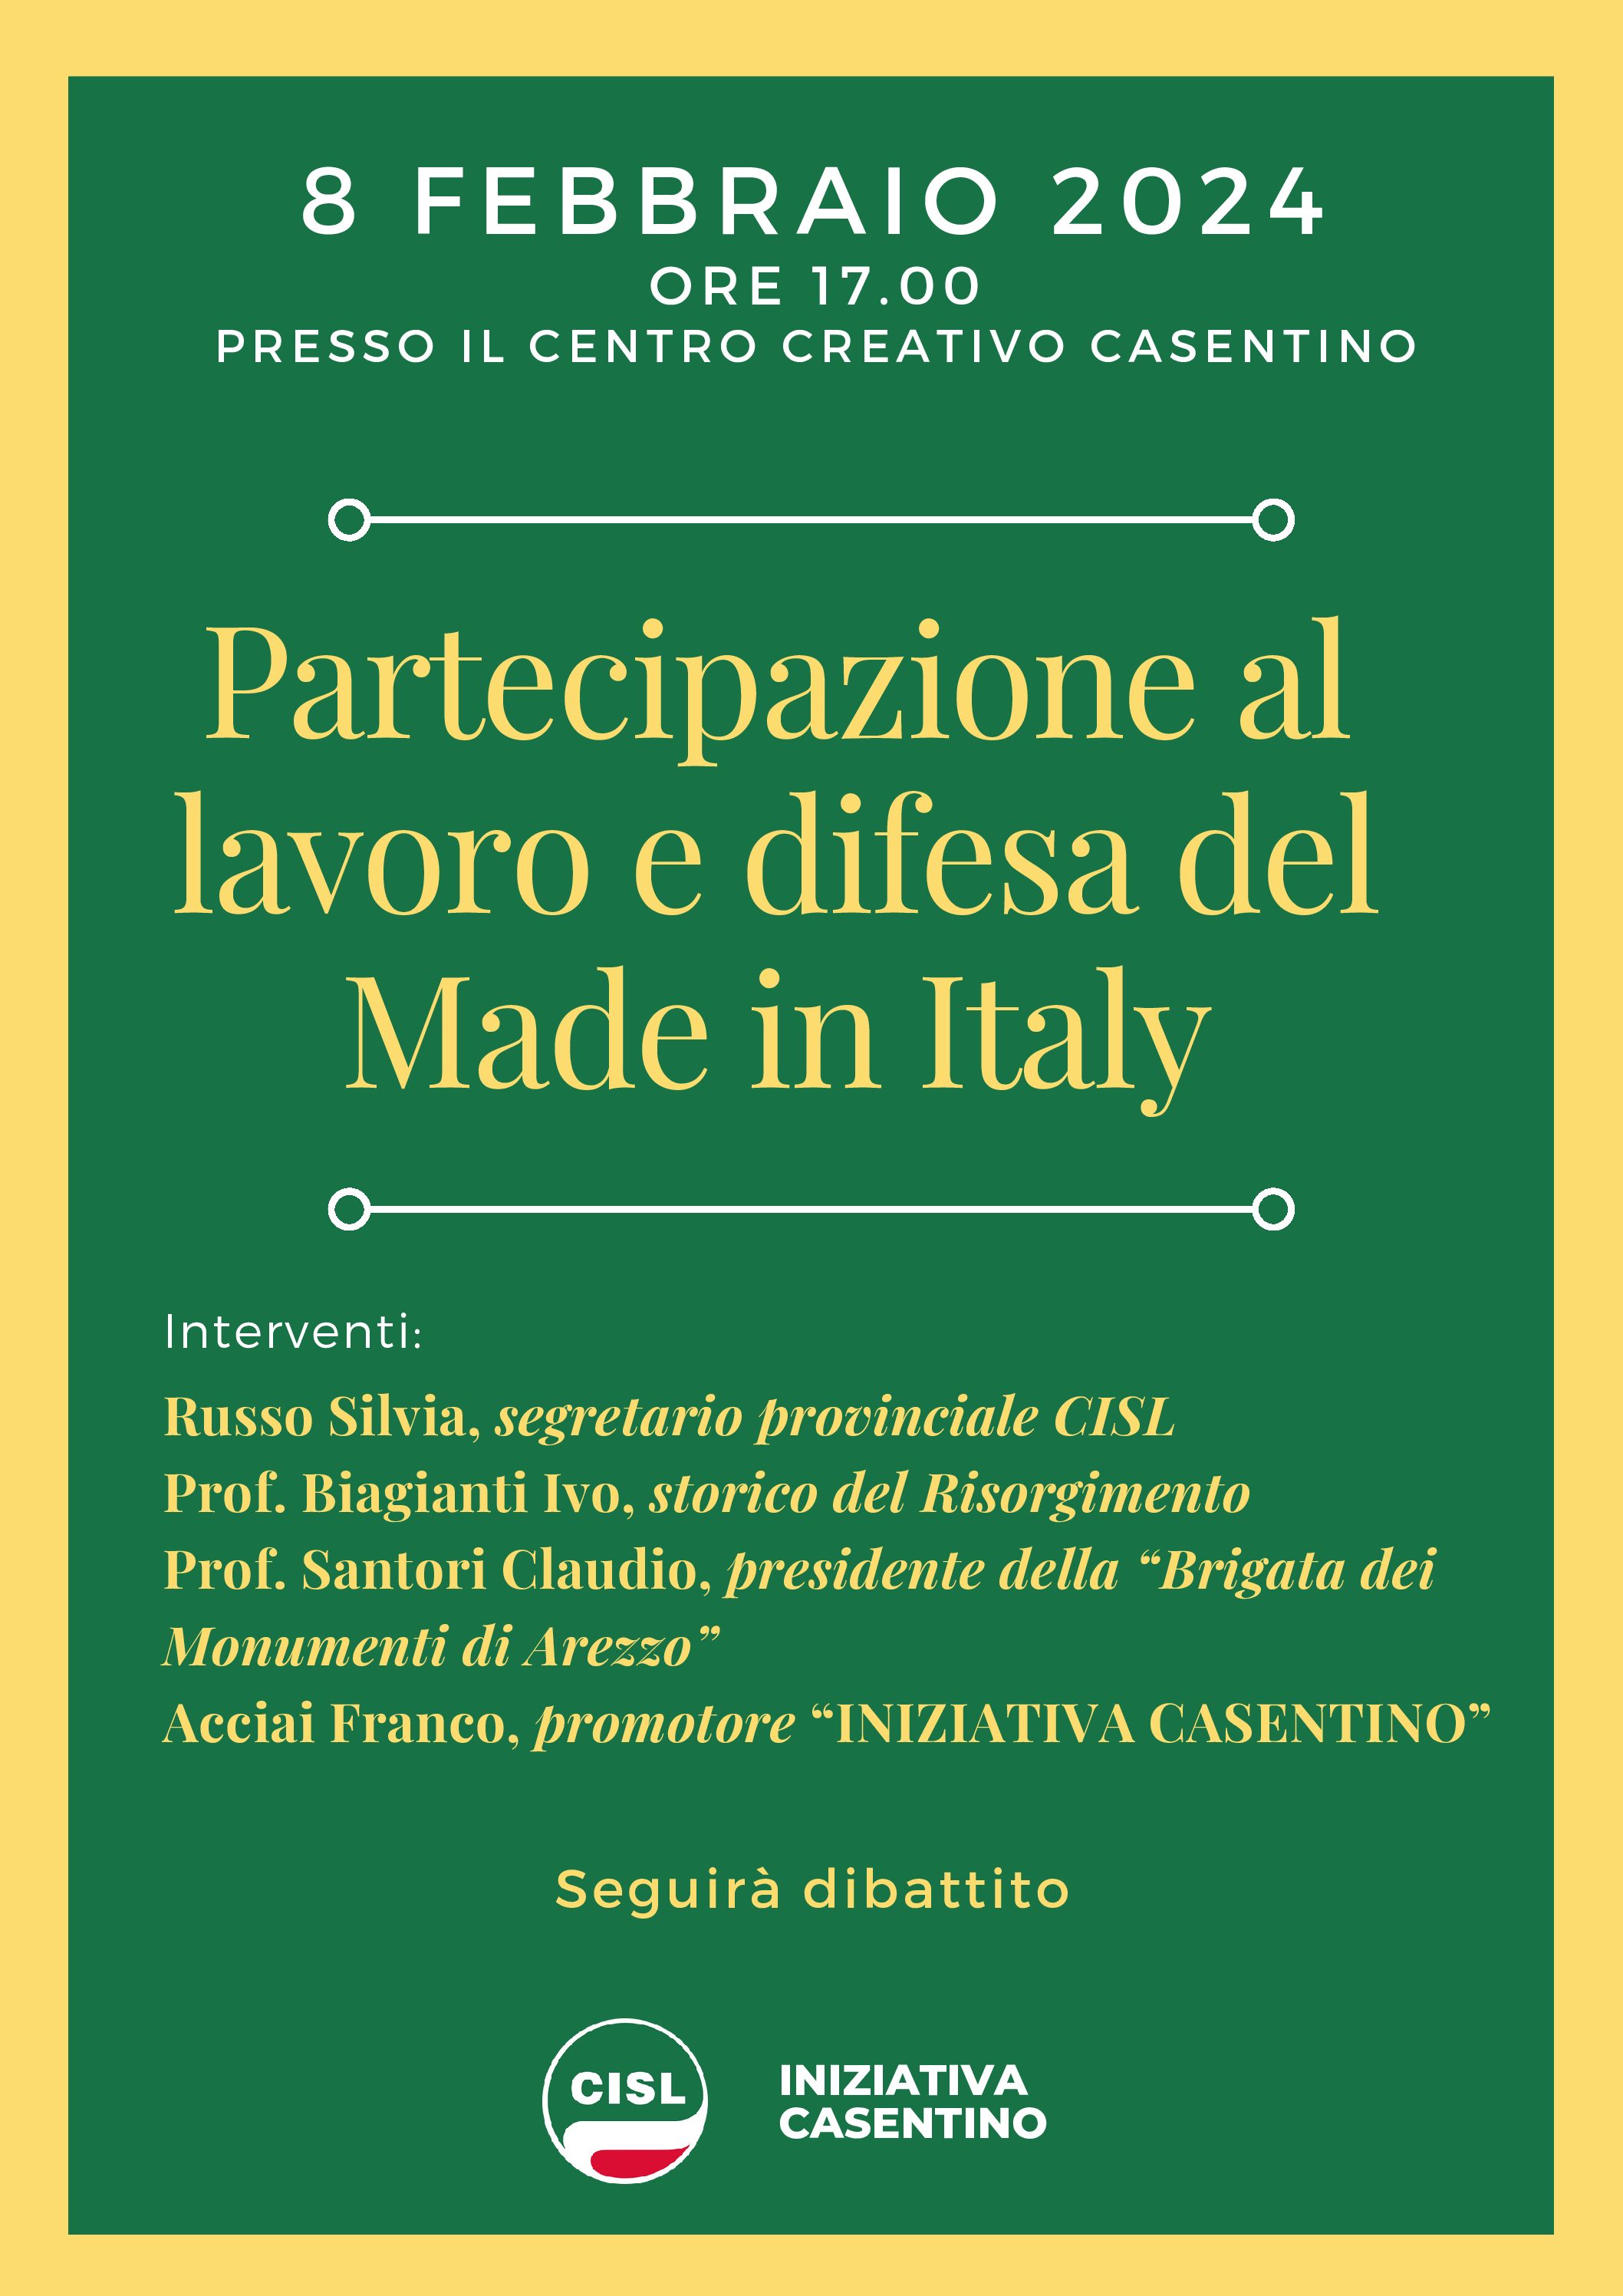 Partecipazione al lavoro e difesa del made in Italy